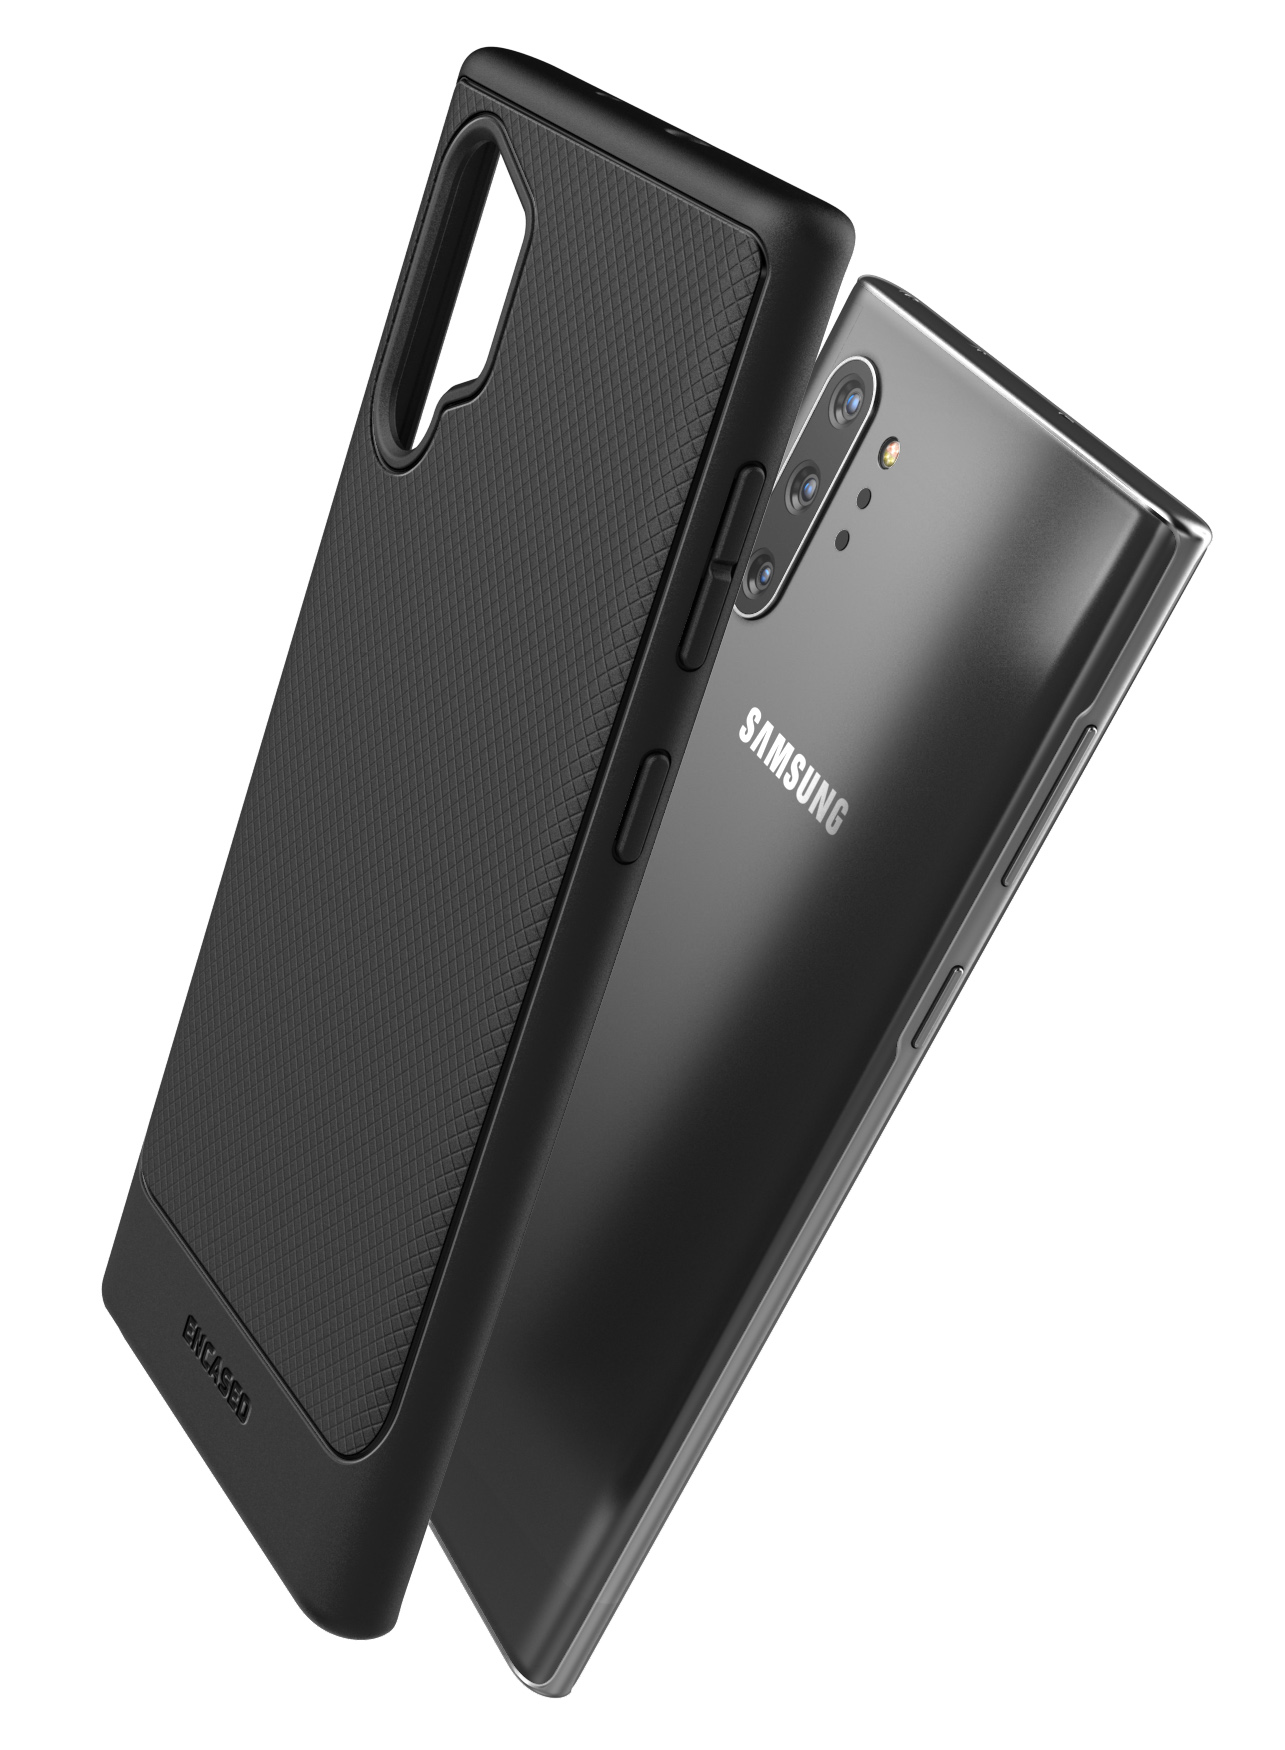 Samsung Note 10 Lite Slimline Case and Holster Black - Encased